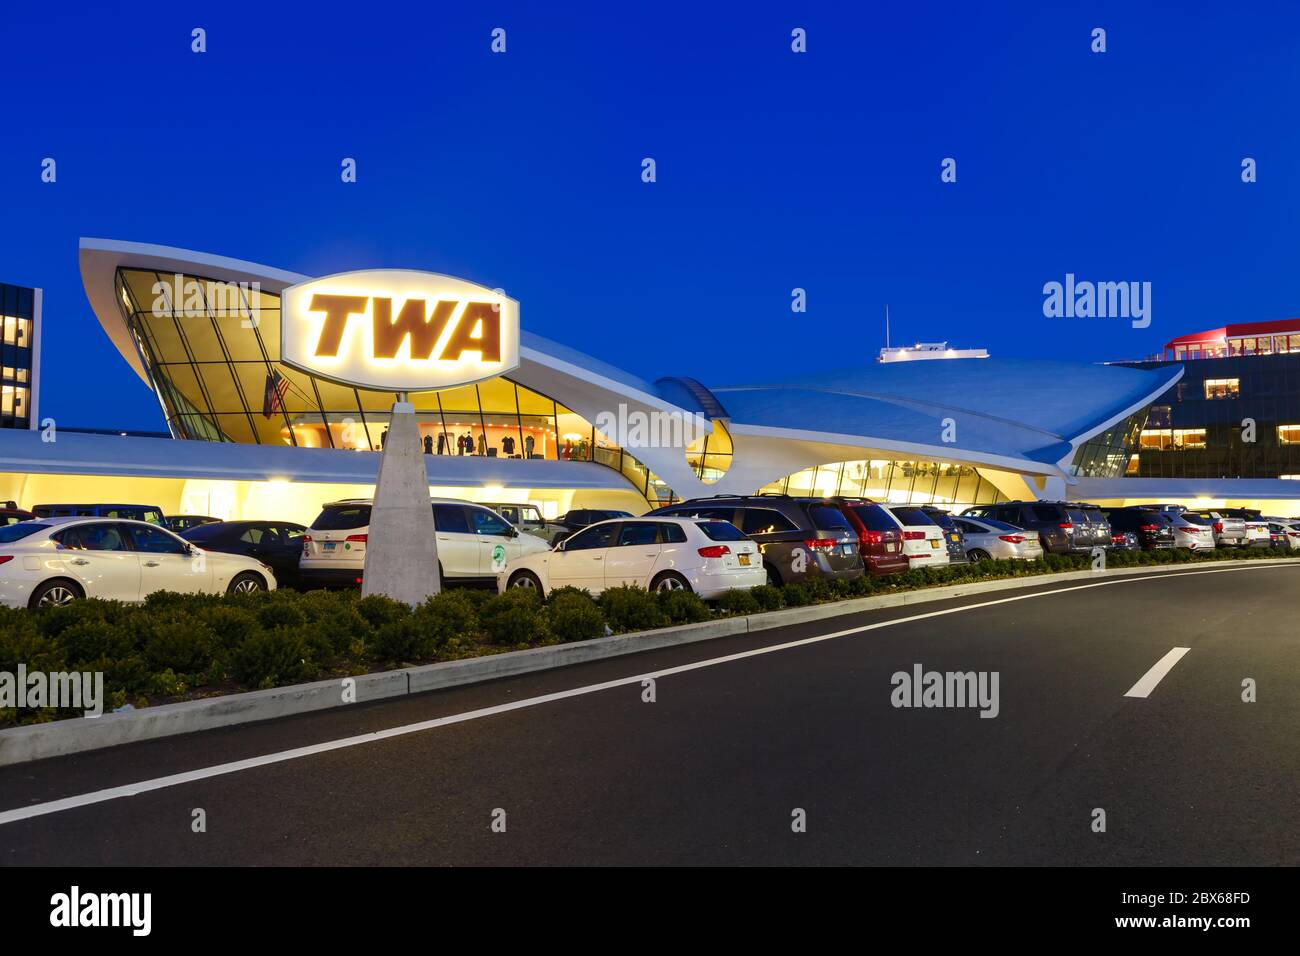 New York City, New York - February 29, 2020: TWA Hotel at New York JFK airport (JFK) in New York. Stock Photo